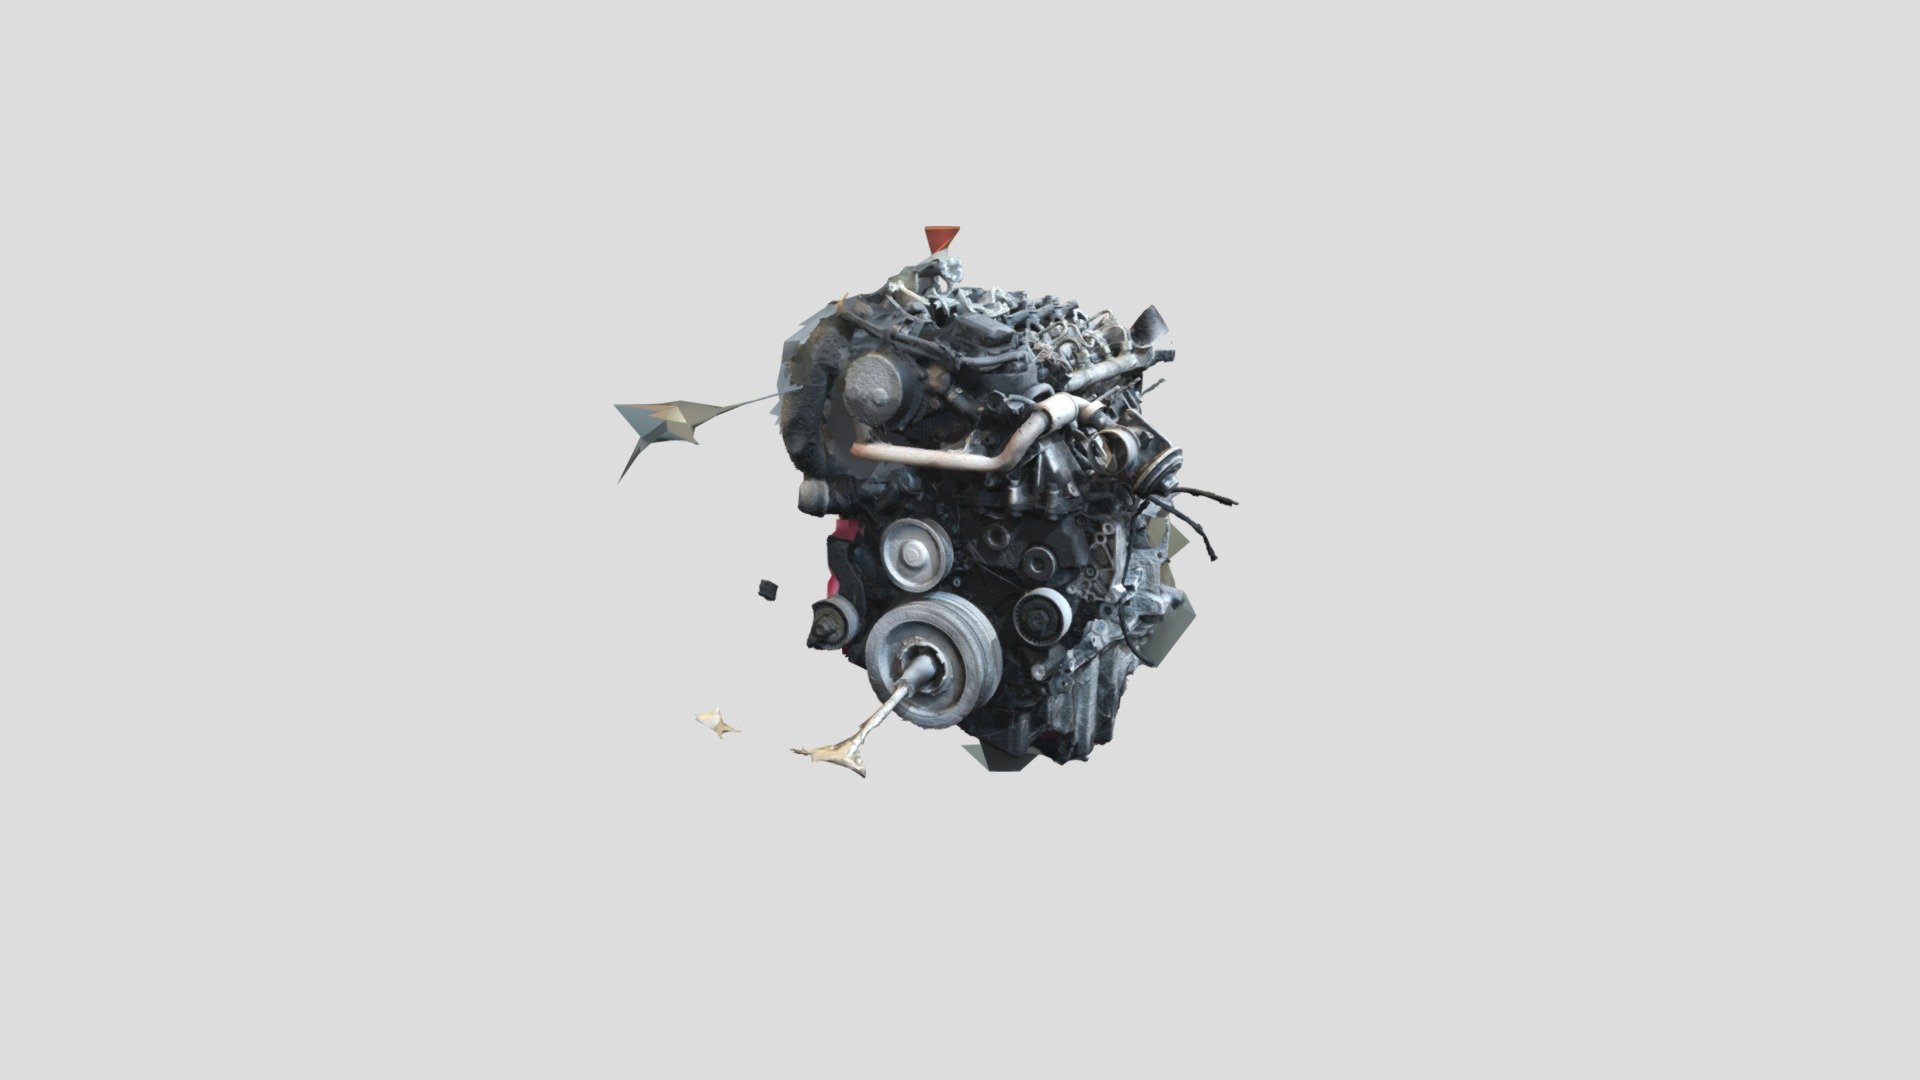 BMW M47 Engine half cut - 3D model by Takepics 3D (@Elibonbon) [9de0148]